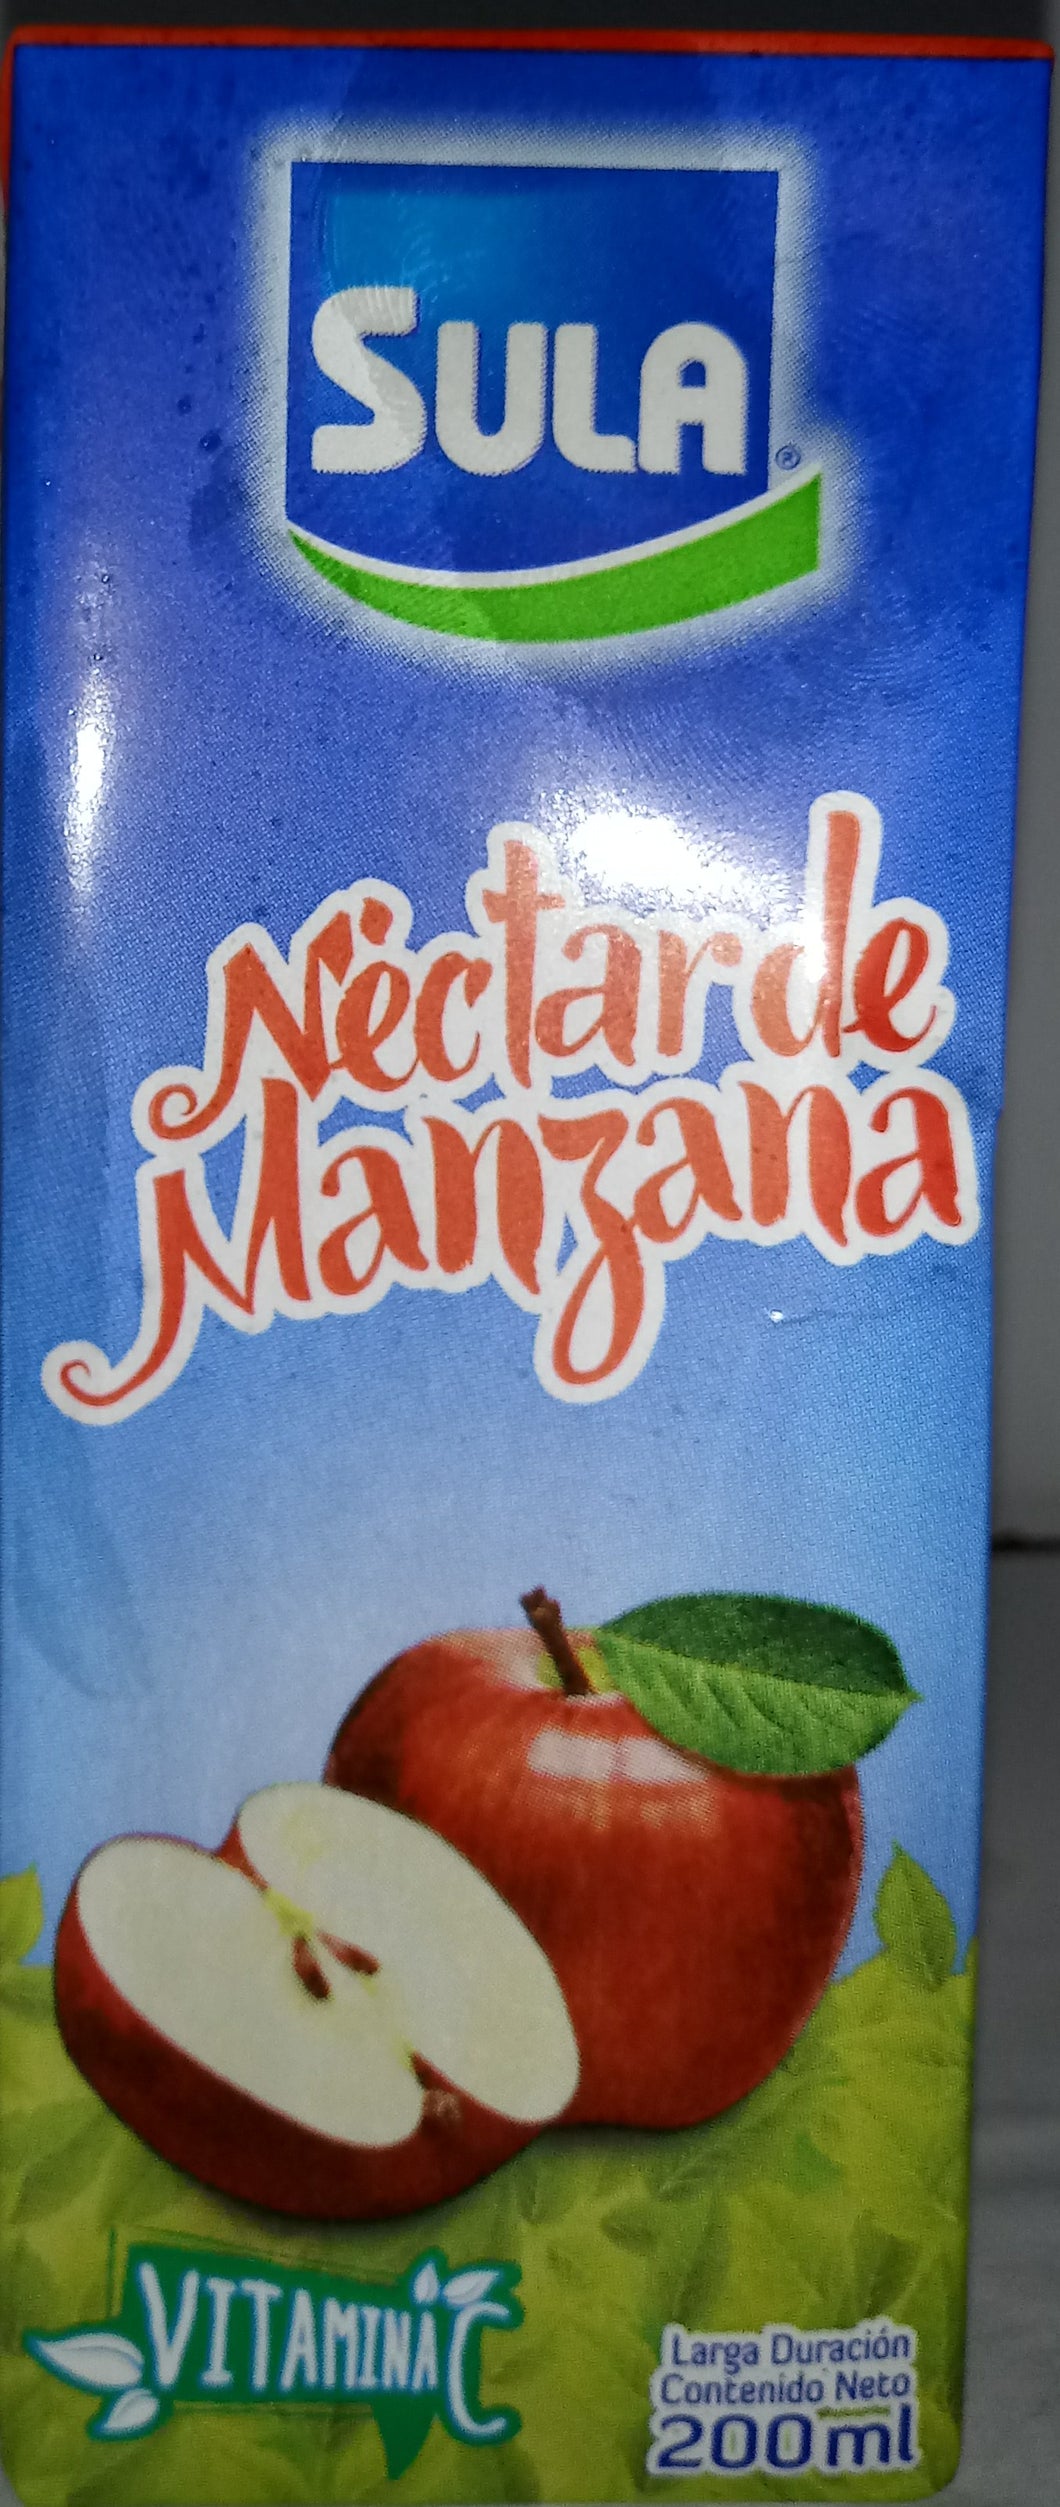 Nectar de manzana Sula 200ml